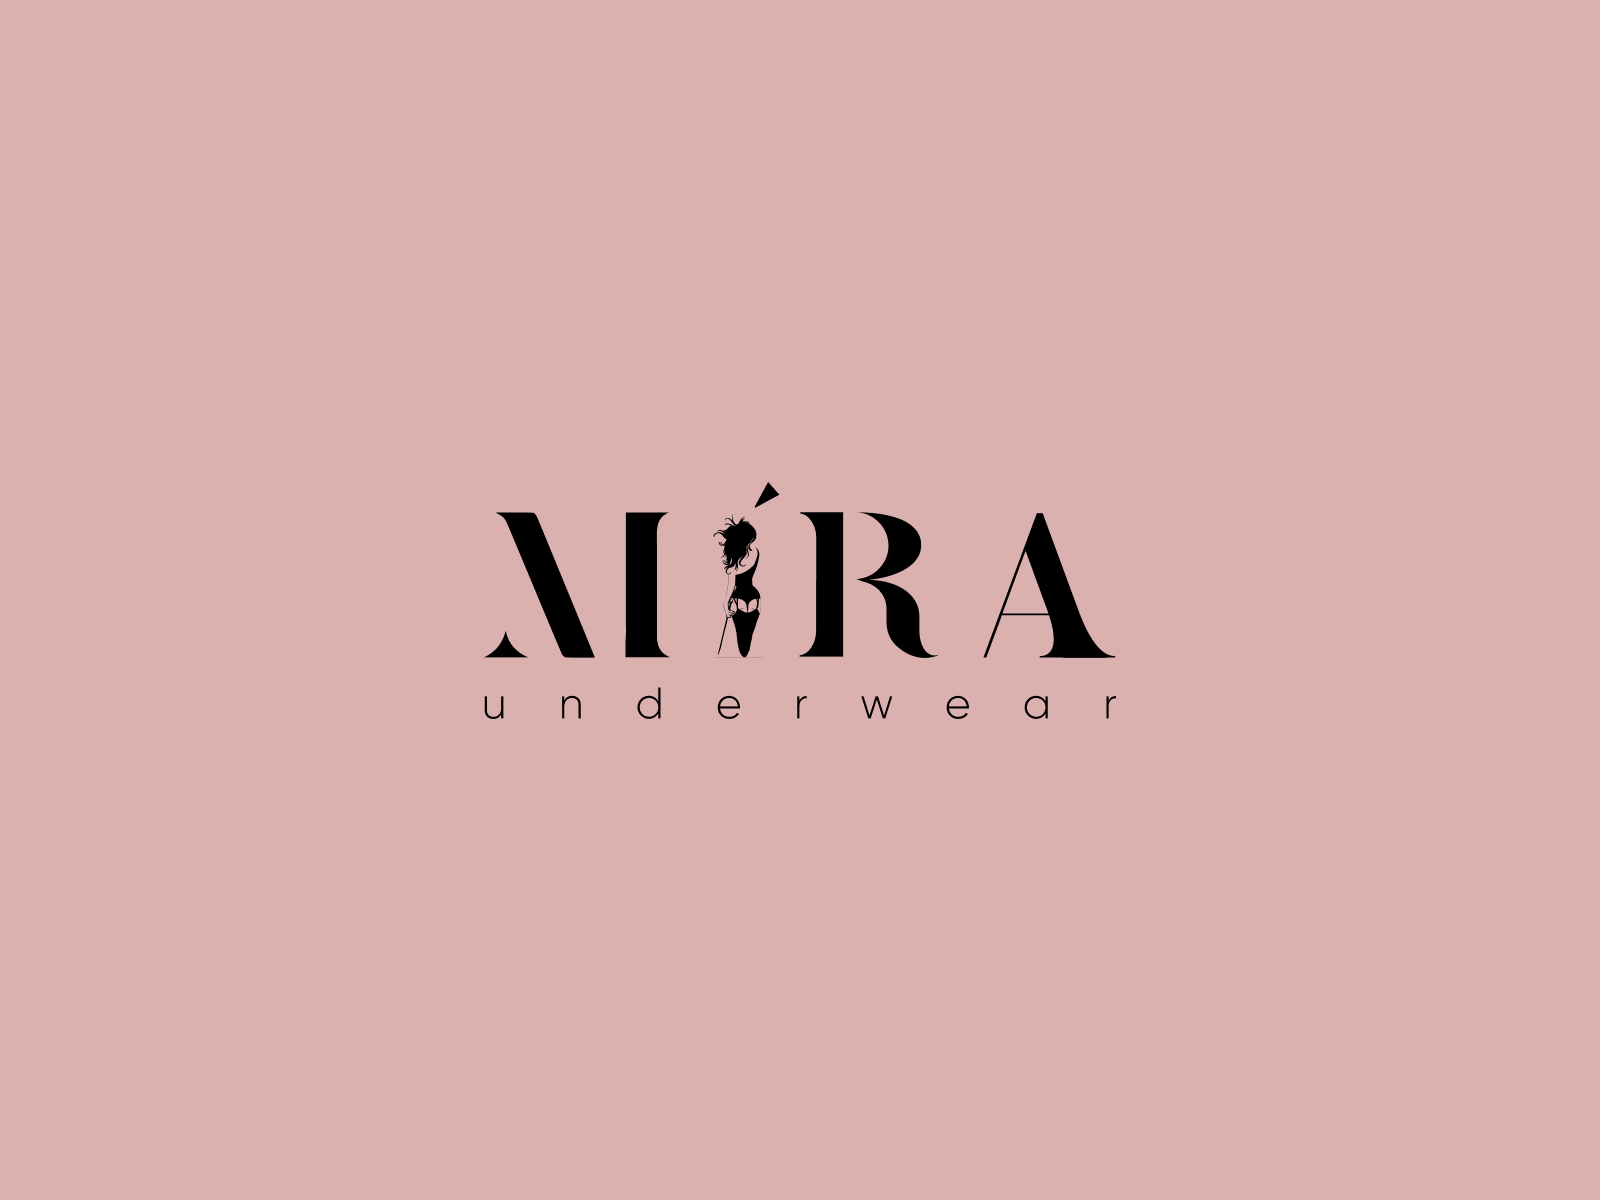 Mira underwear logo by Olga Babitskaya on Dribbble